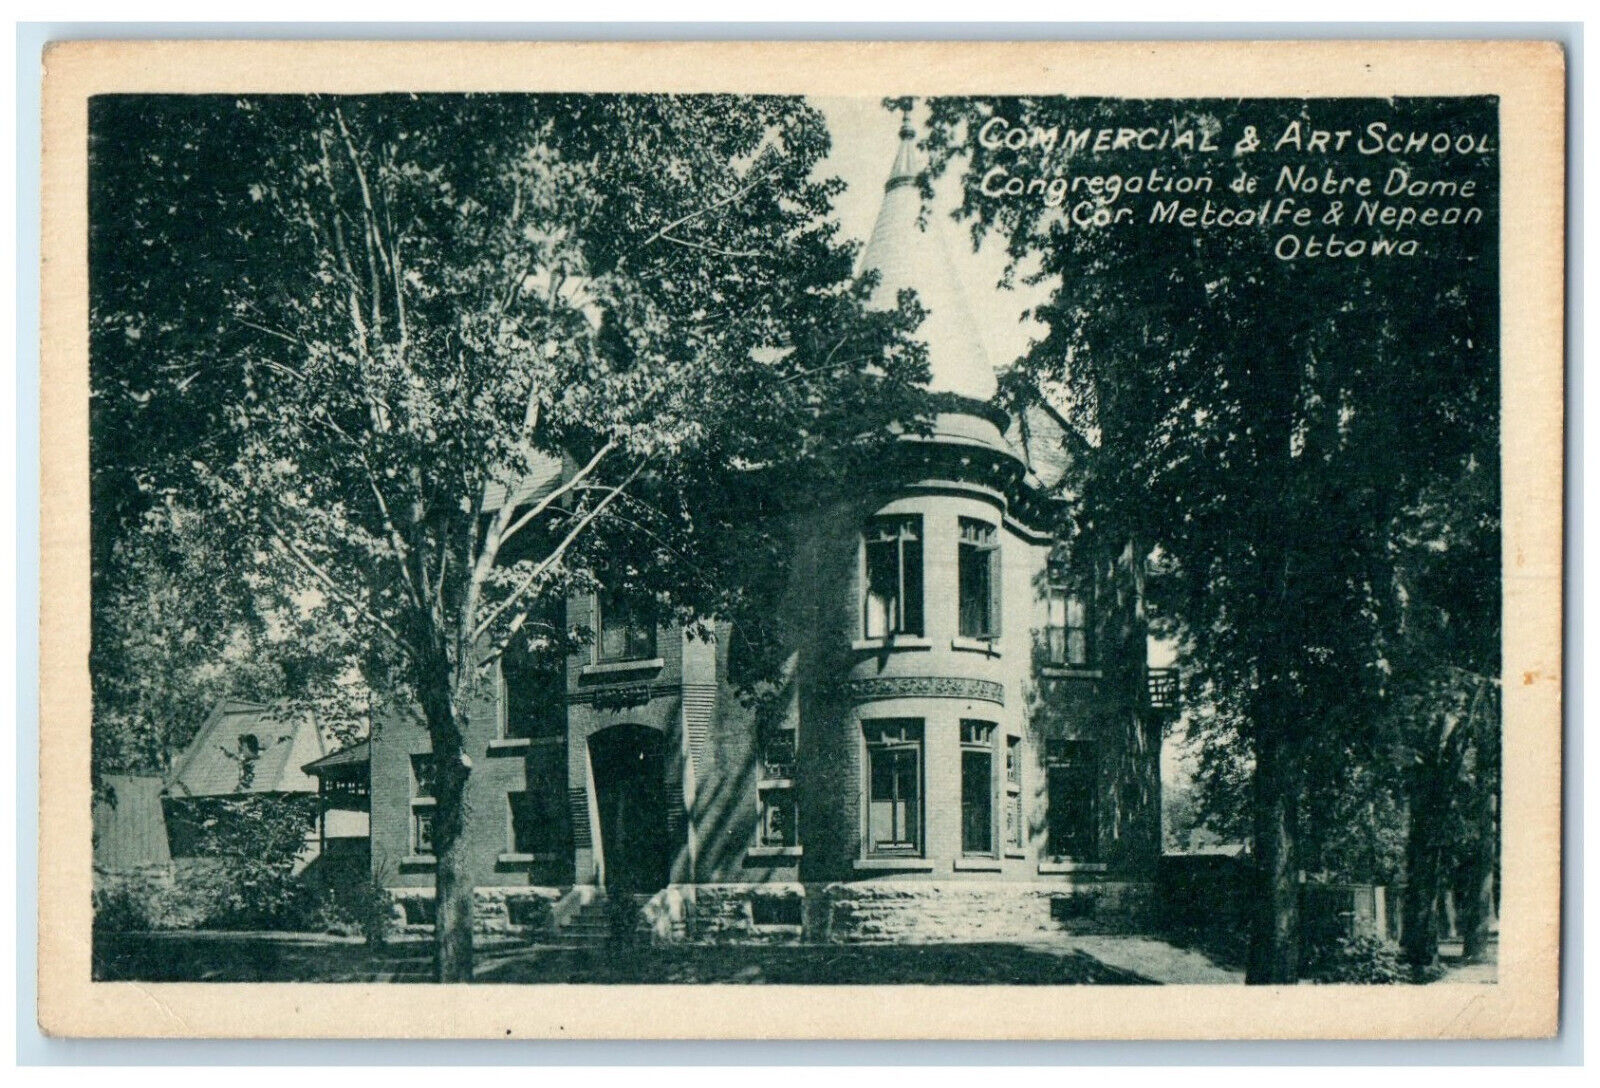 c1930\'s Commercial & Art School Congregation de Notre Dame Ottawa Postcard